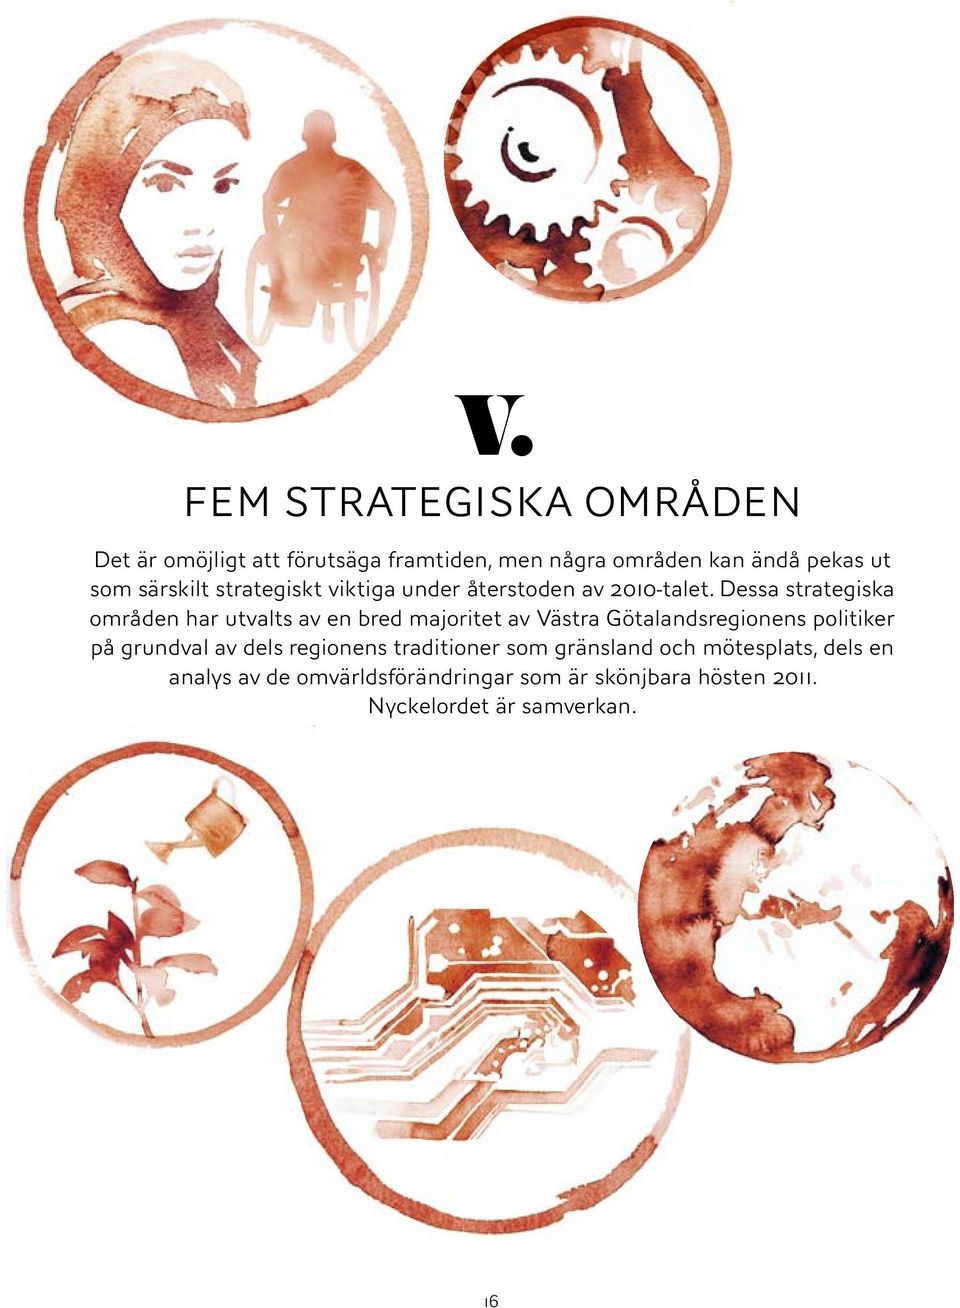 Dessa strategiska områden har utvalts av en bred majoritet av Västra Götalandsregionens politiker på grundval